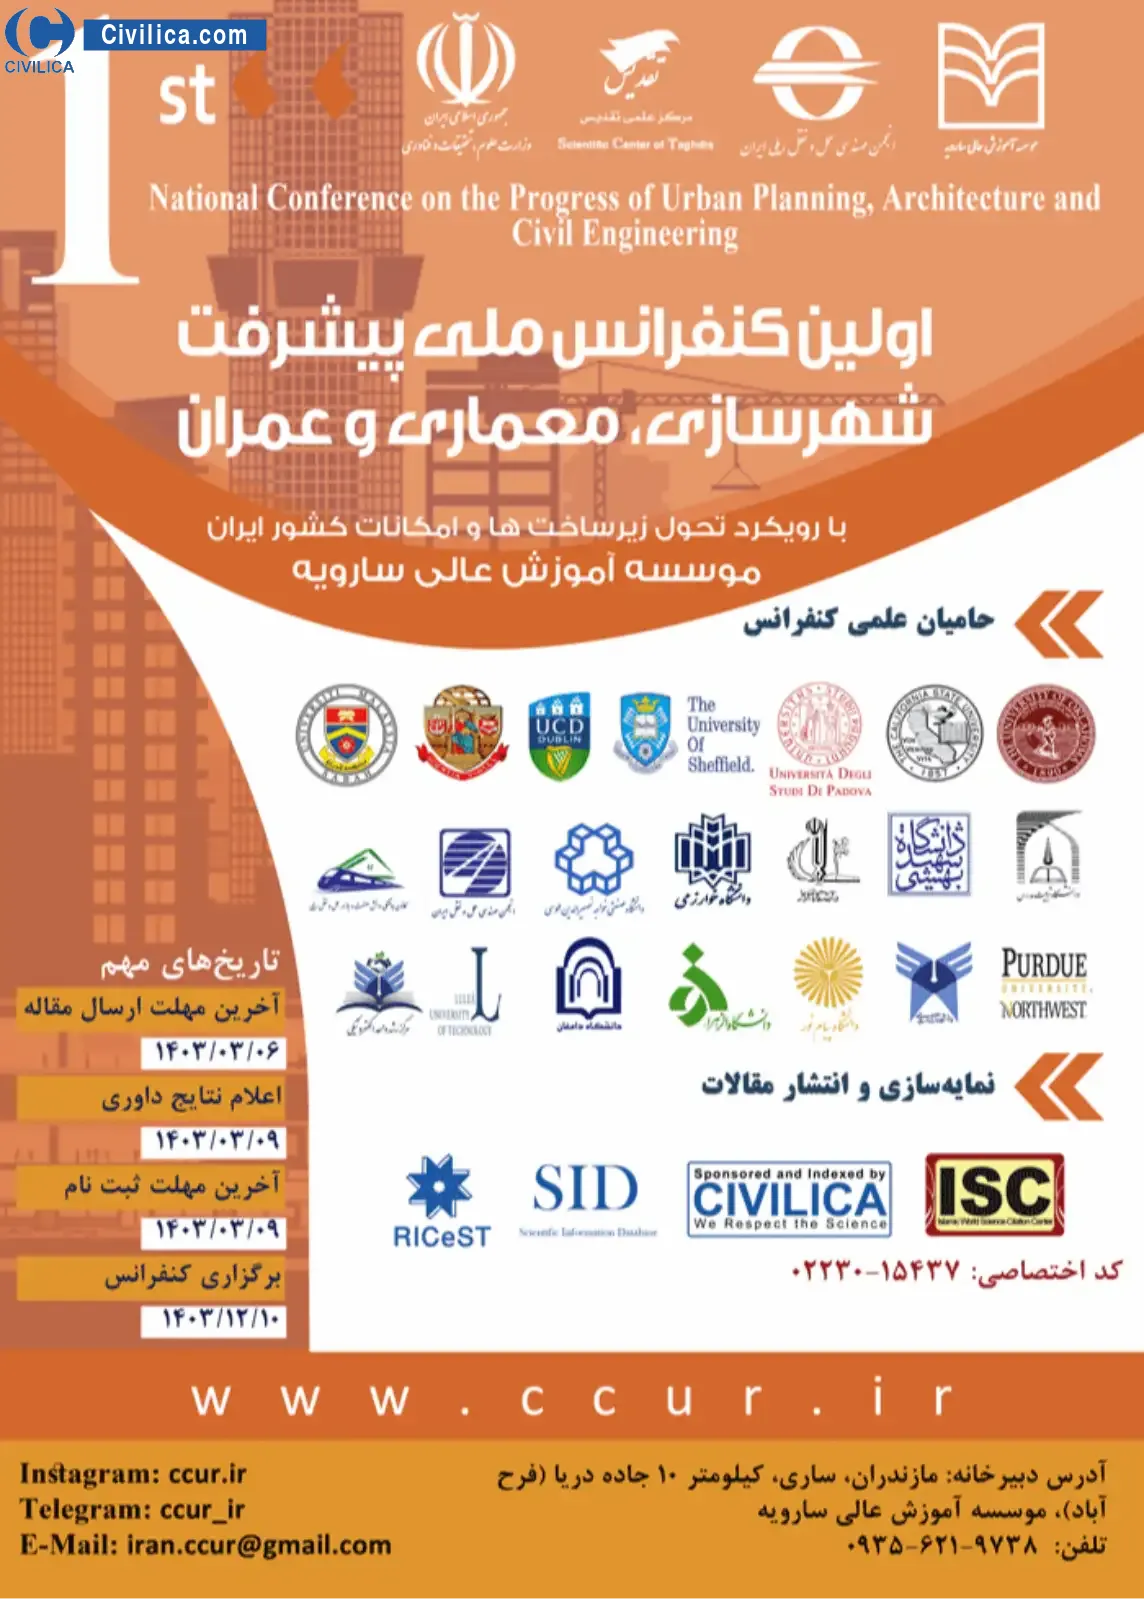 اولین کنفرانس بین المللی و ملی پیشرفت شهرسازی، معماری و عمران